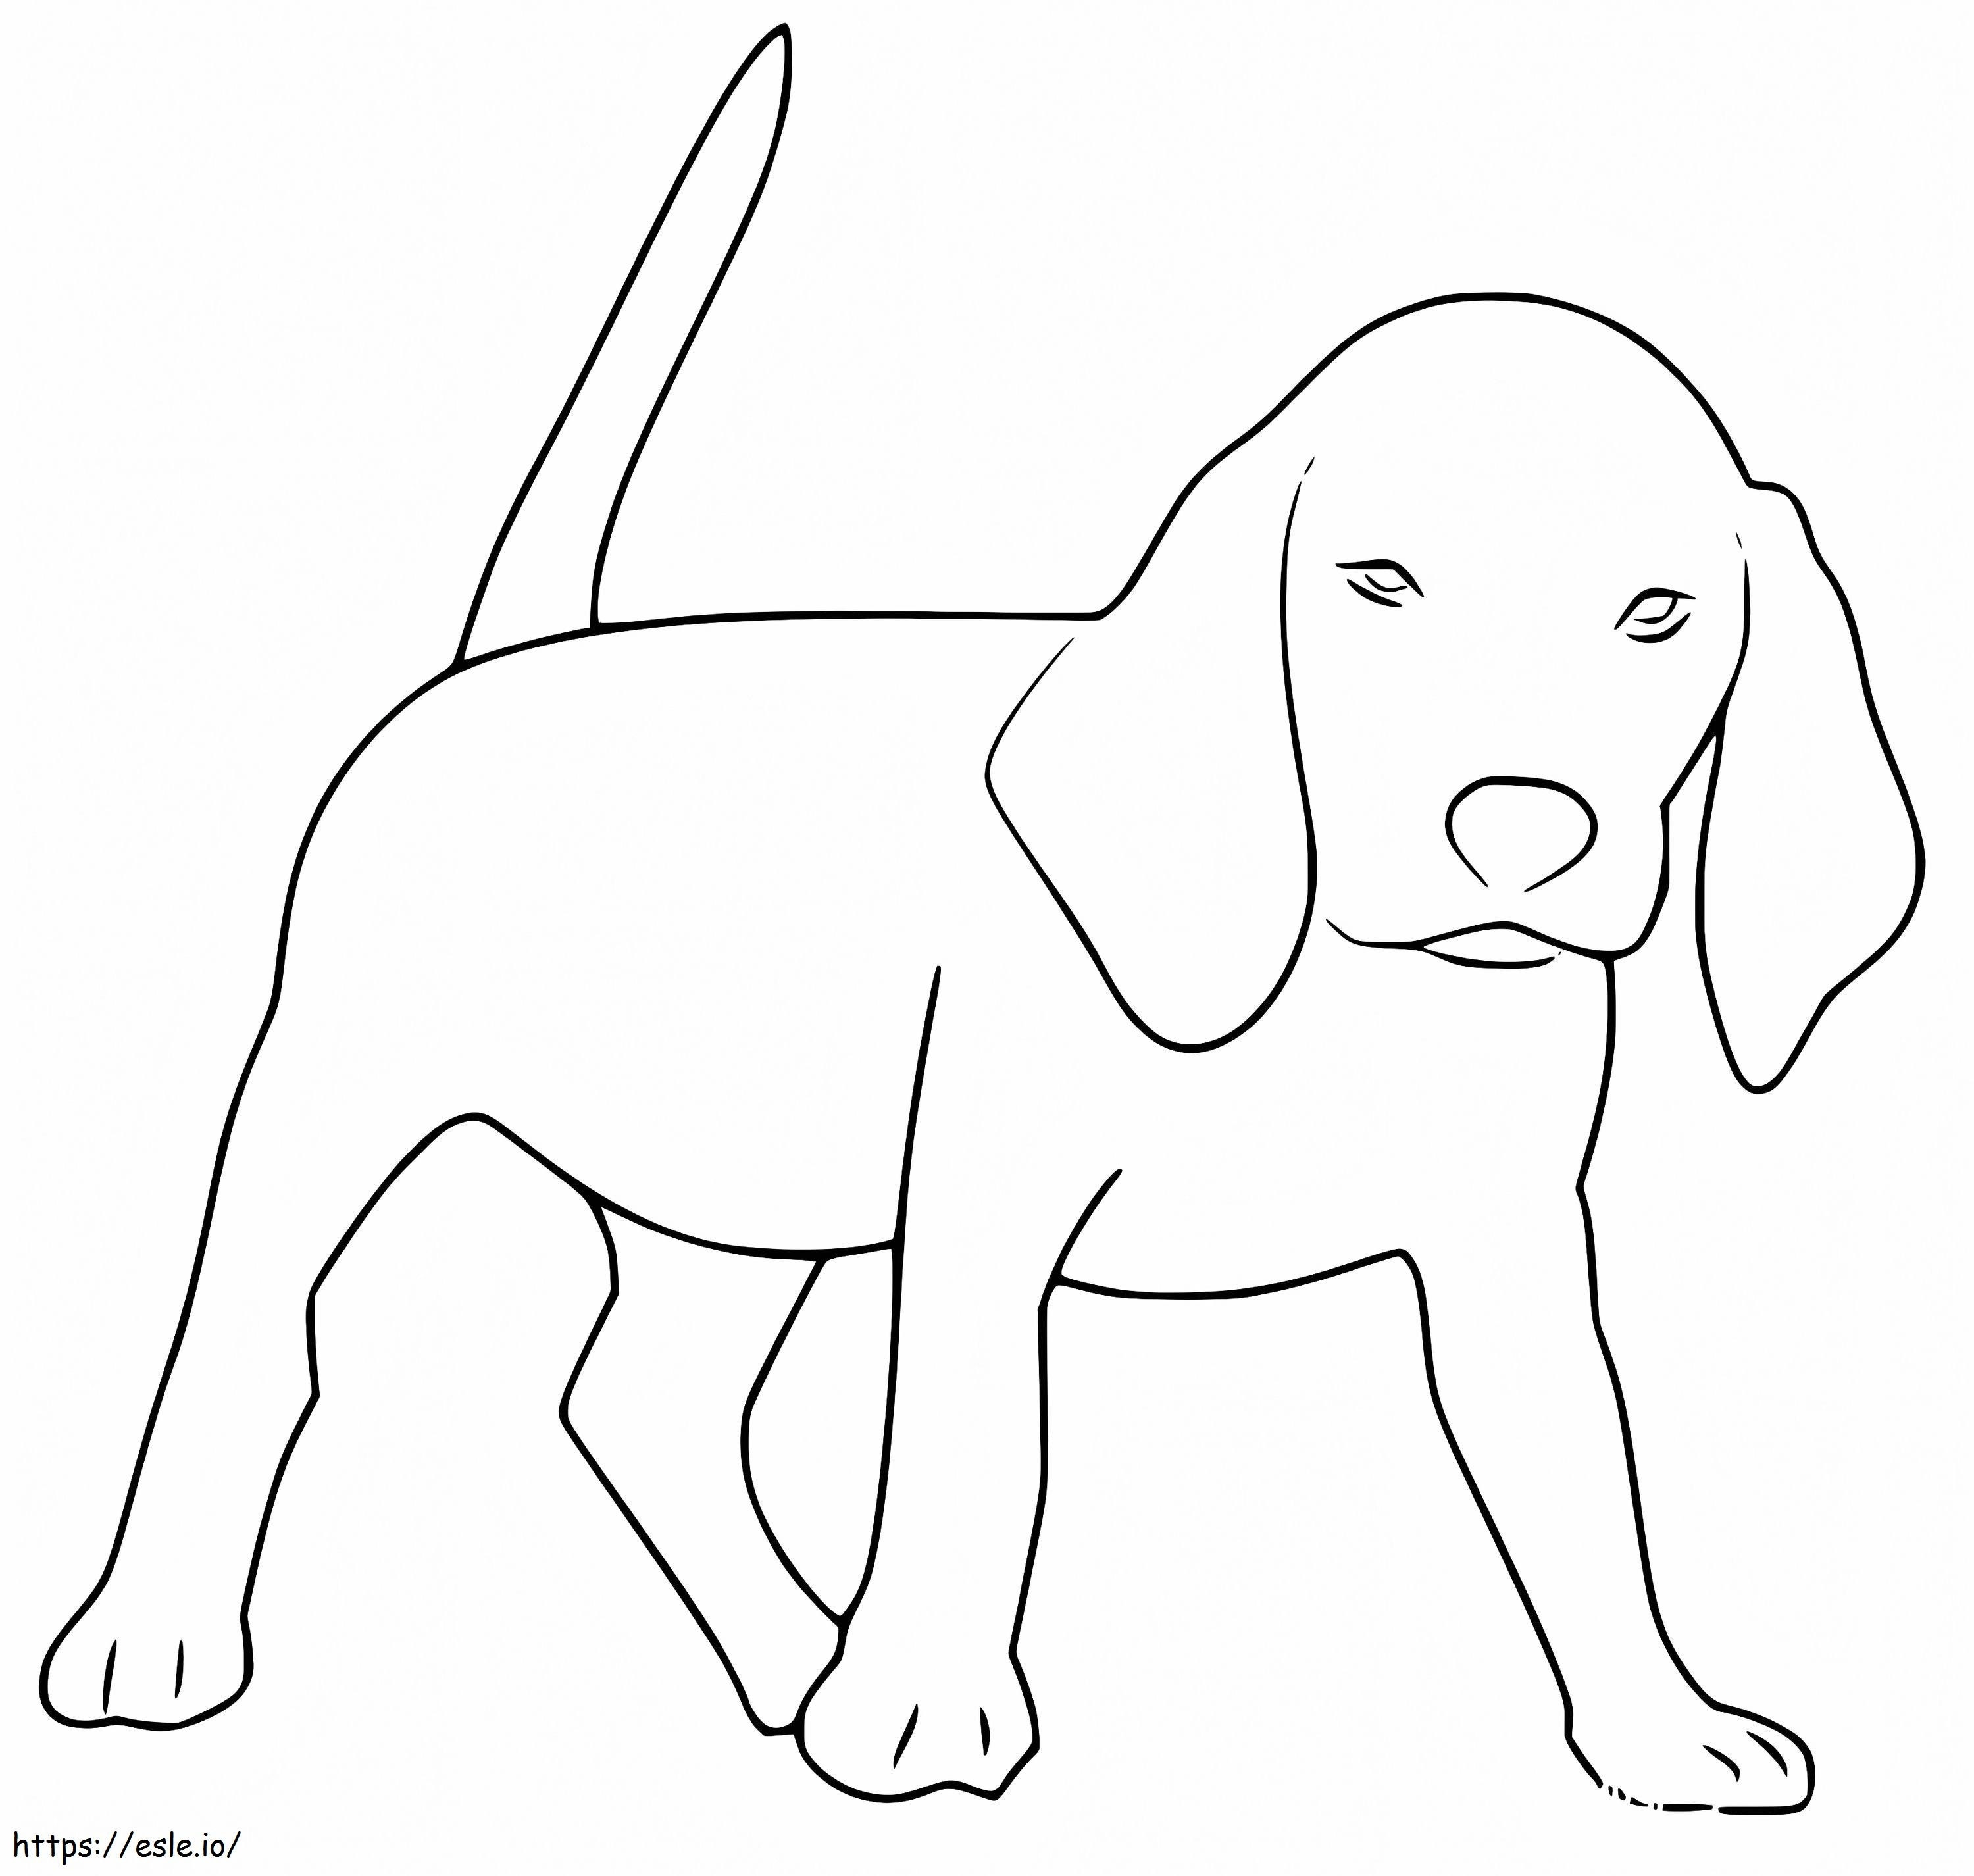 Anjing Beagle yang Mudah Gambar Mewarnai